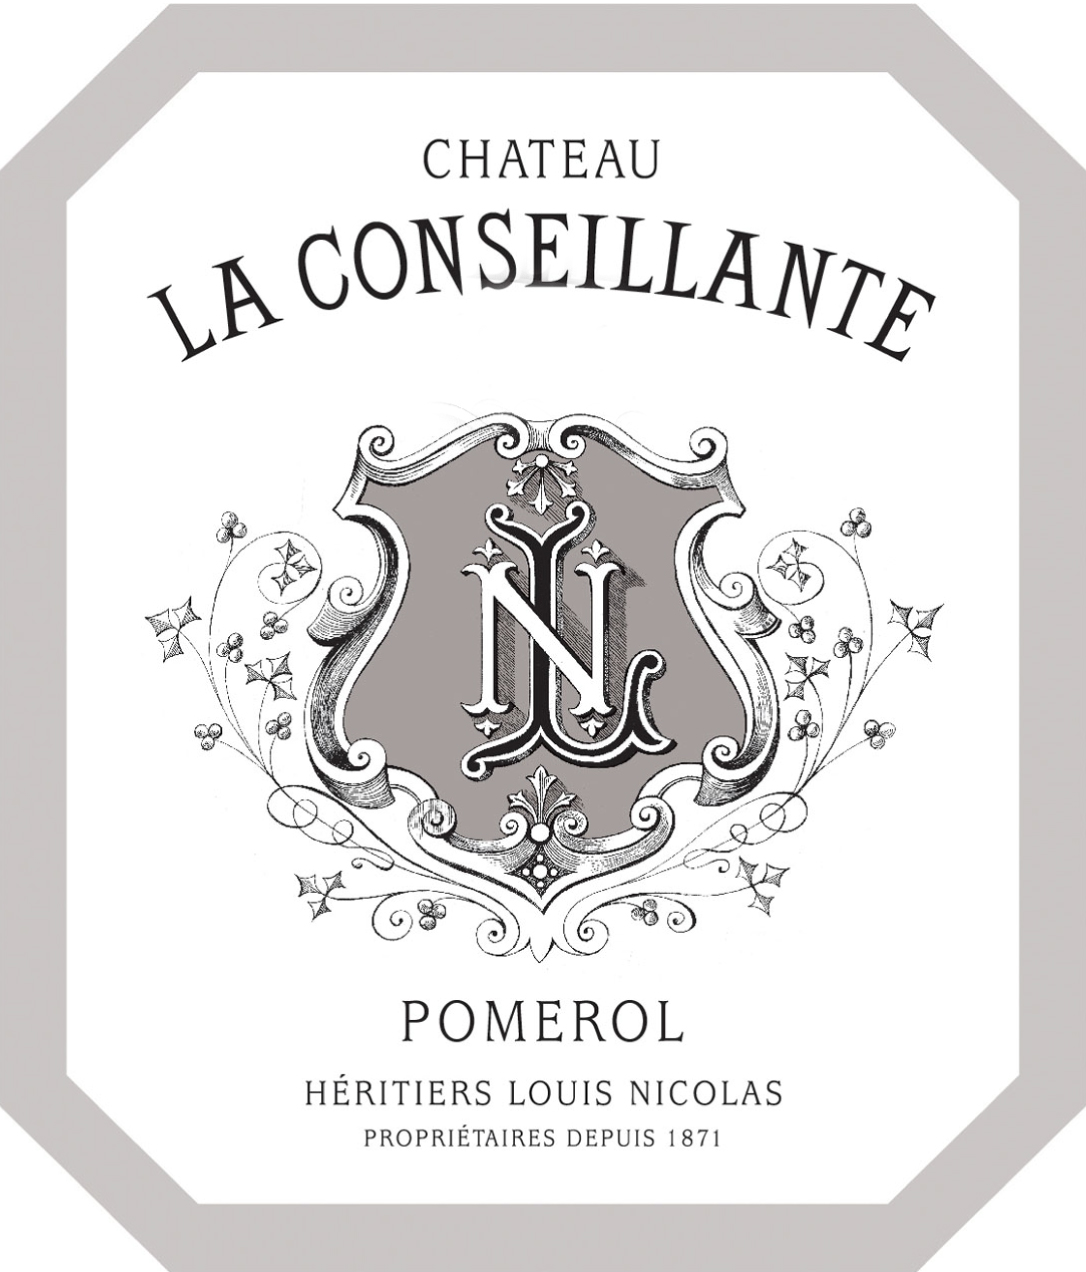 Chateau La Conseillante label